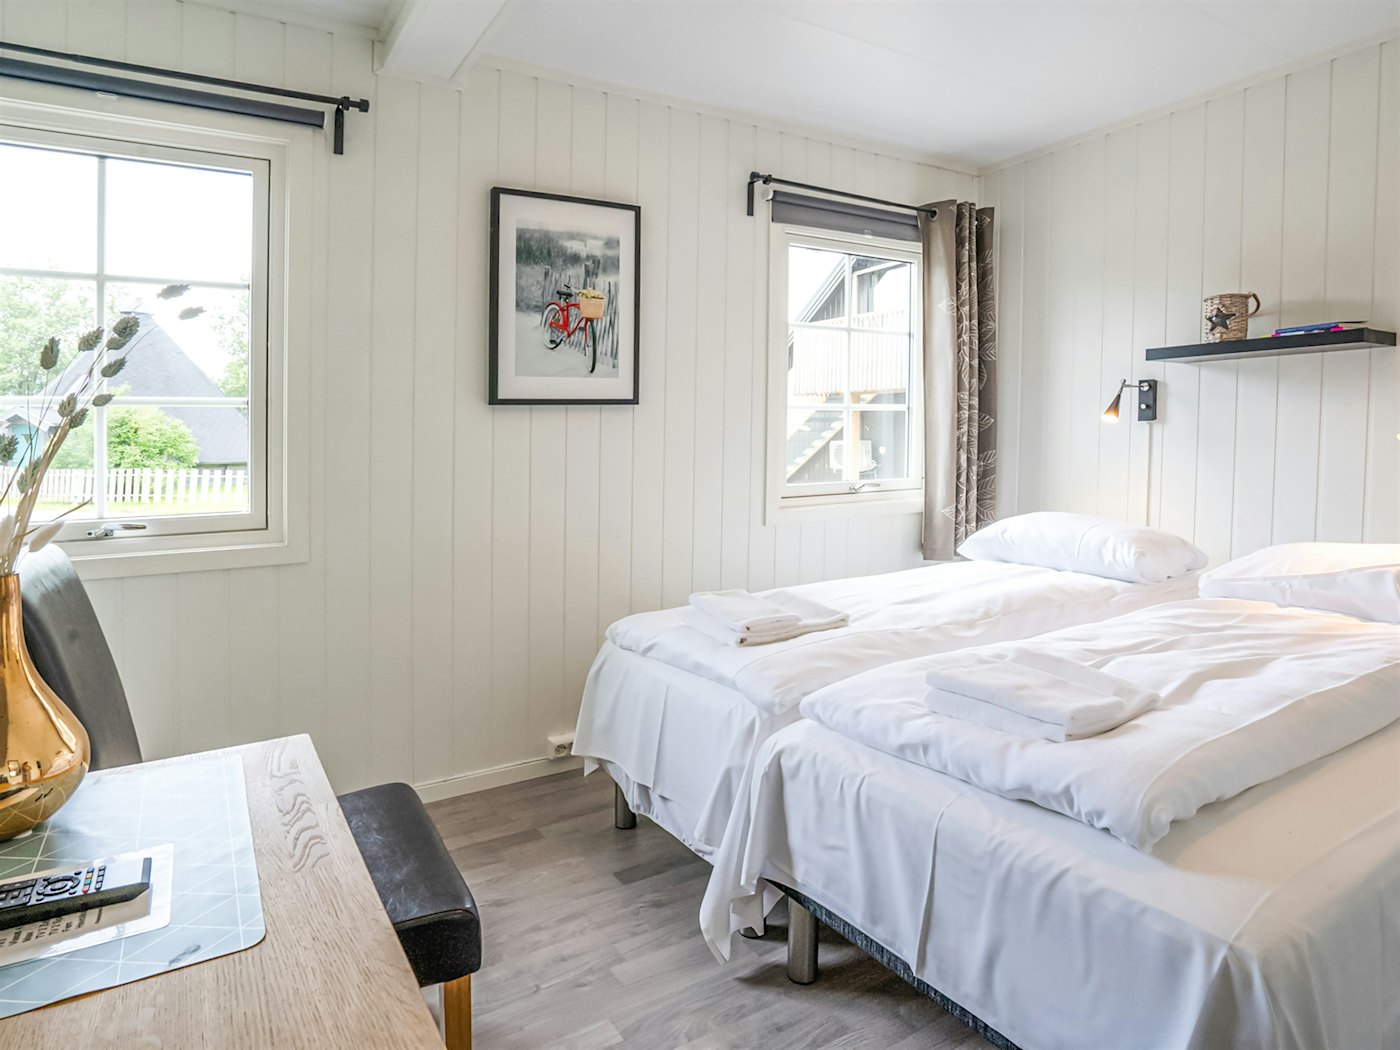 Lyst rom med dobbeltseng med hvitt sengetøy, rommet er pyntet med bilde på veggen og en vase. Foto